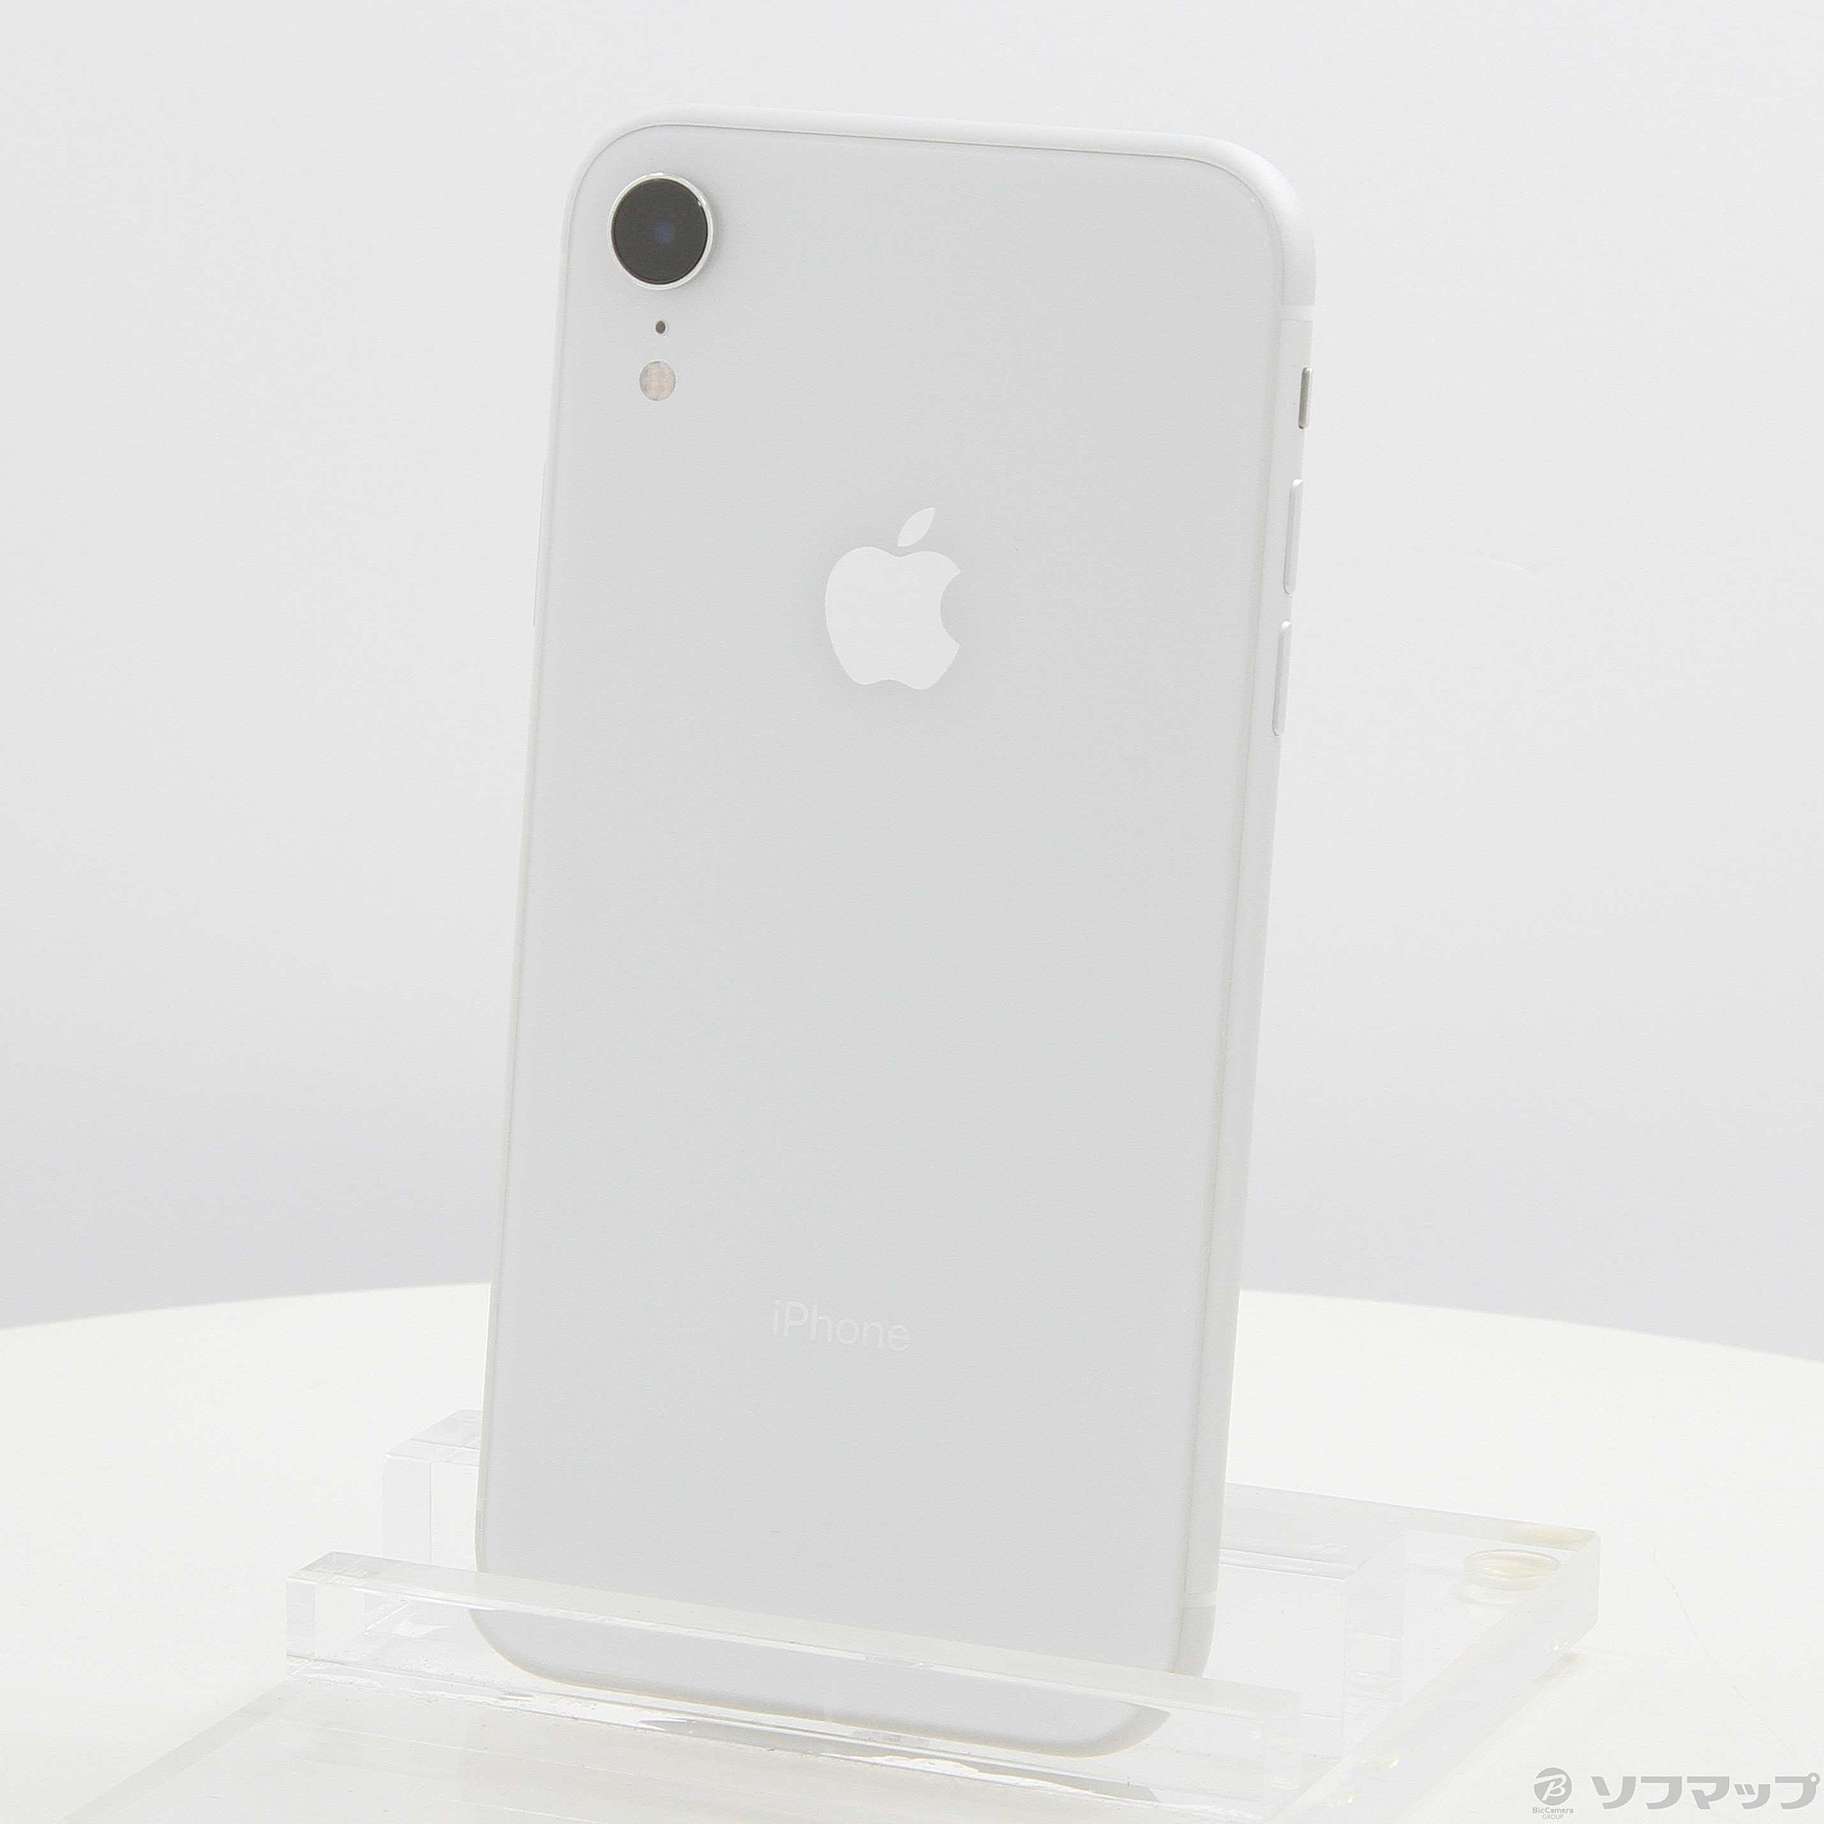 【12月11日出品取消】iPhoneXR 64GB